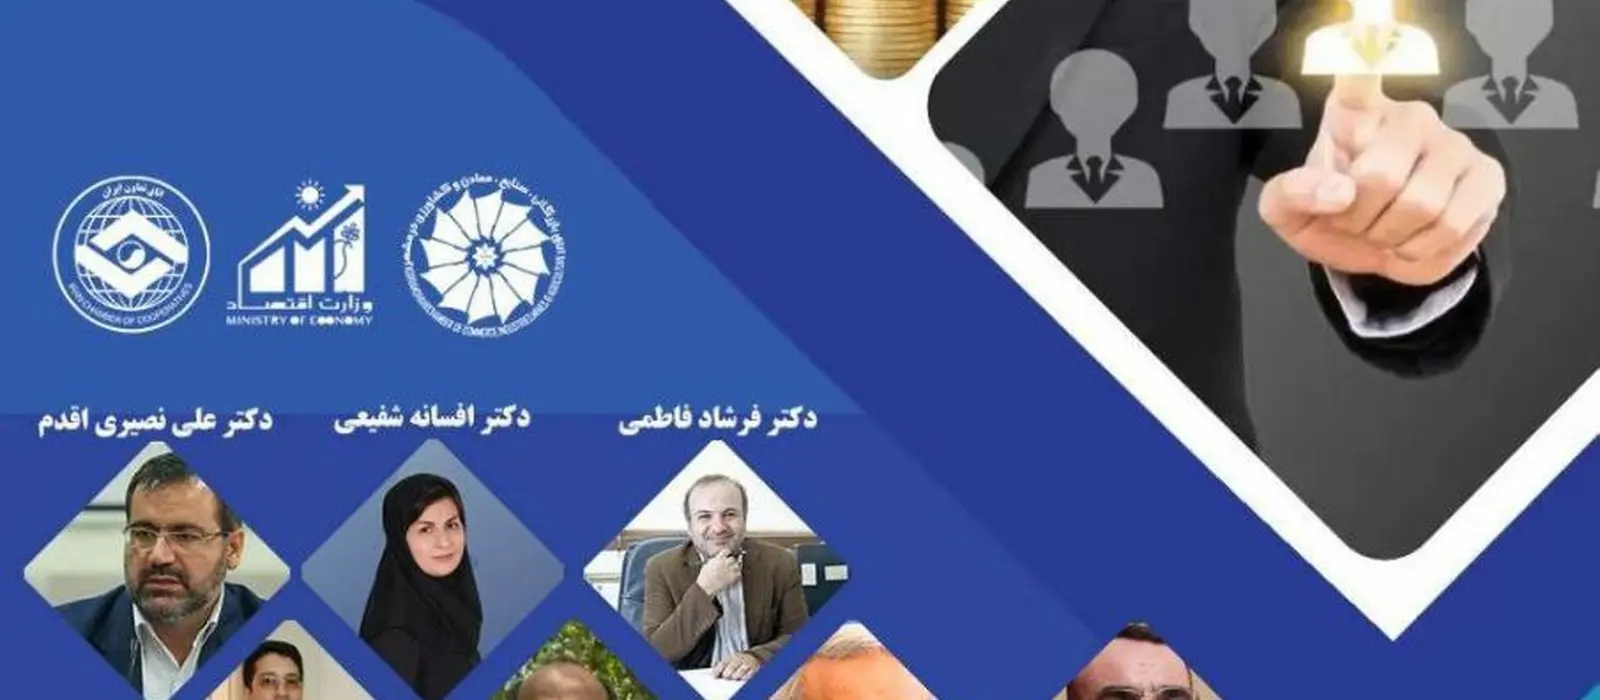 اولین پیش نشست همایش بین المللی تنظیم گری و سیاستگذاری رقابت در ایران برگزار می شود